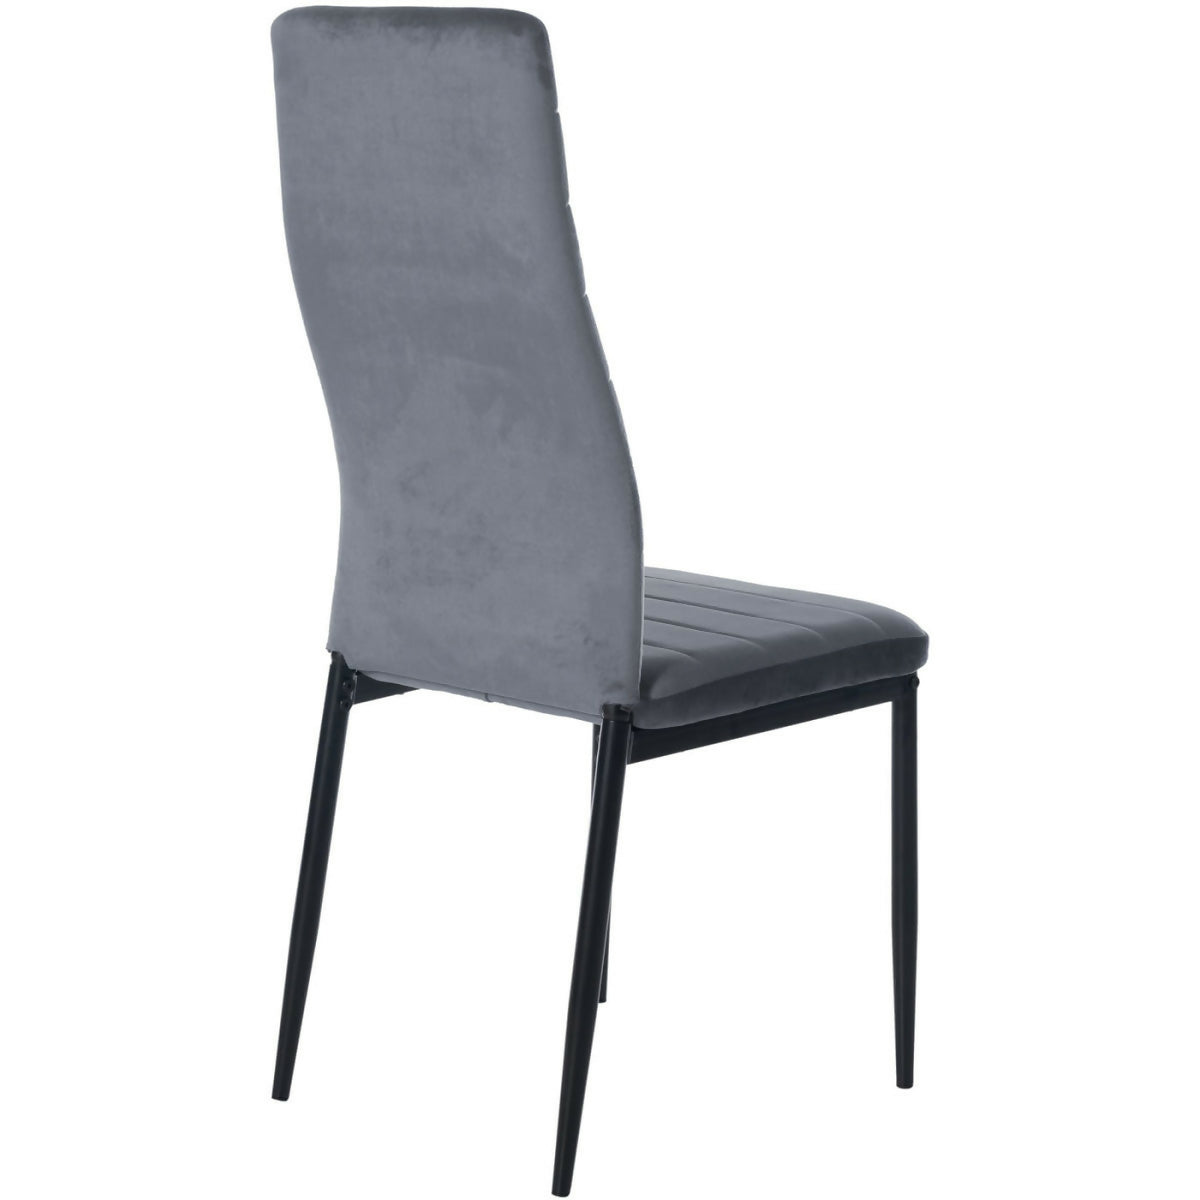 Mayfair Velvet Chair - Light gray